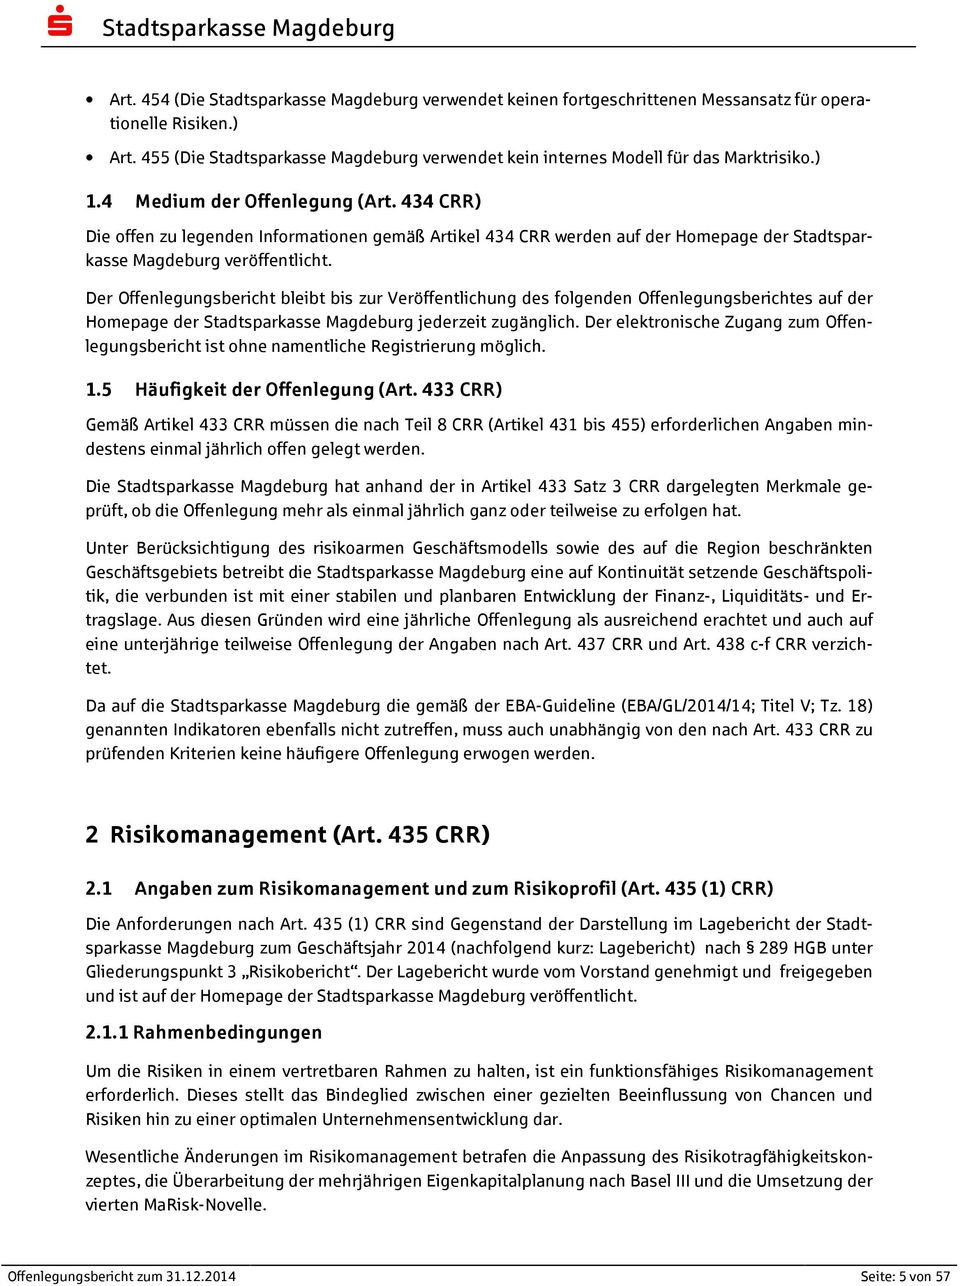 434 CRR) Die offen zu legenden Informationen gemäß Artikel 434 CRR werden auf der Homepage der Stadtsparkasse Magdeburg veröffentlicht.